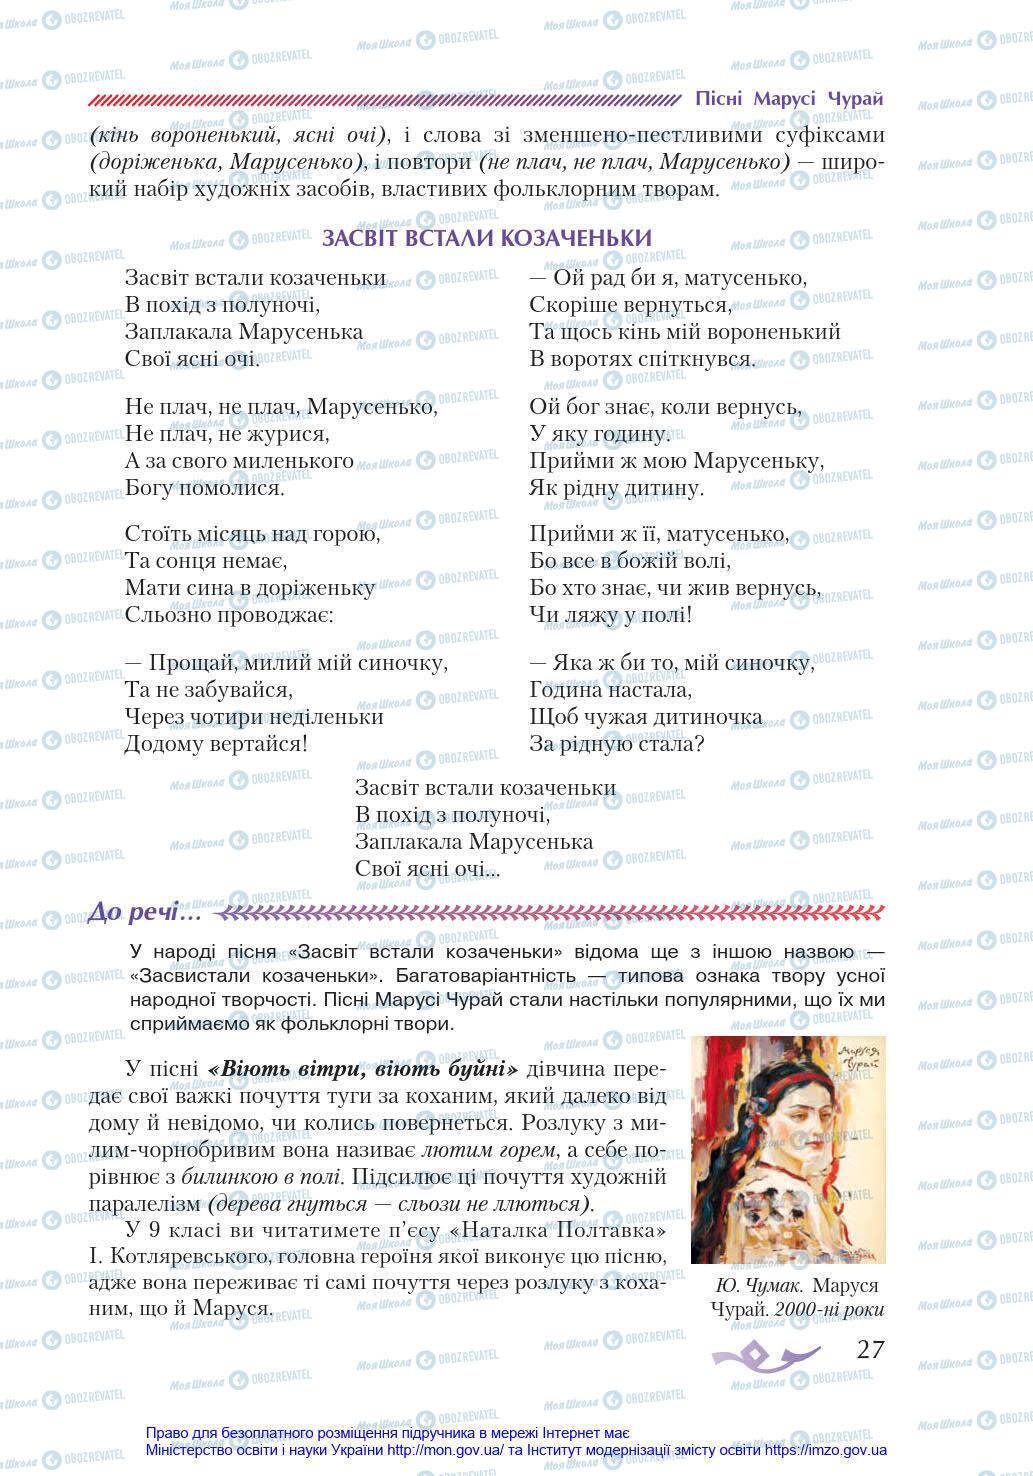 Учебники Укр лит 8 класс страница 27